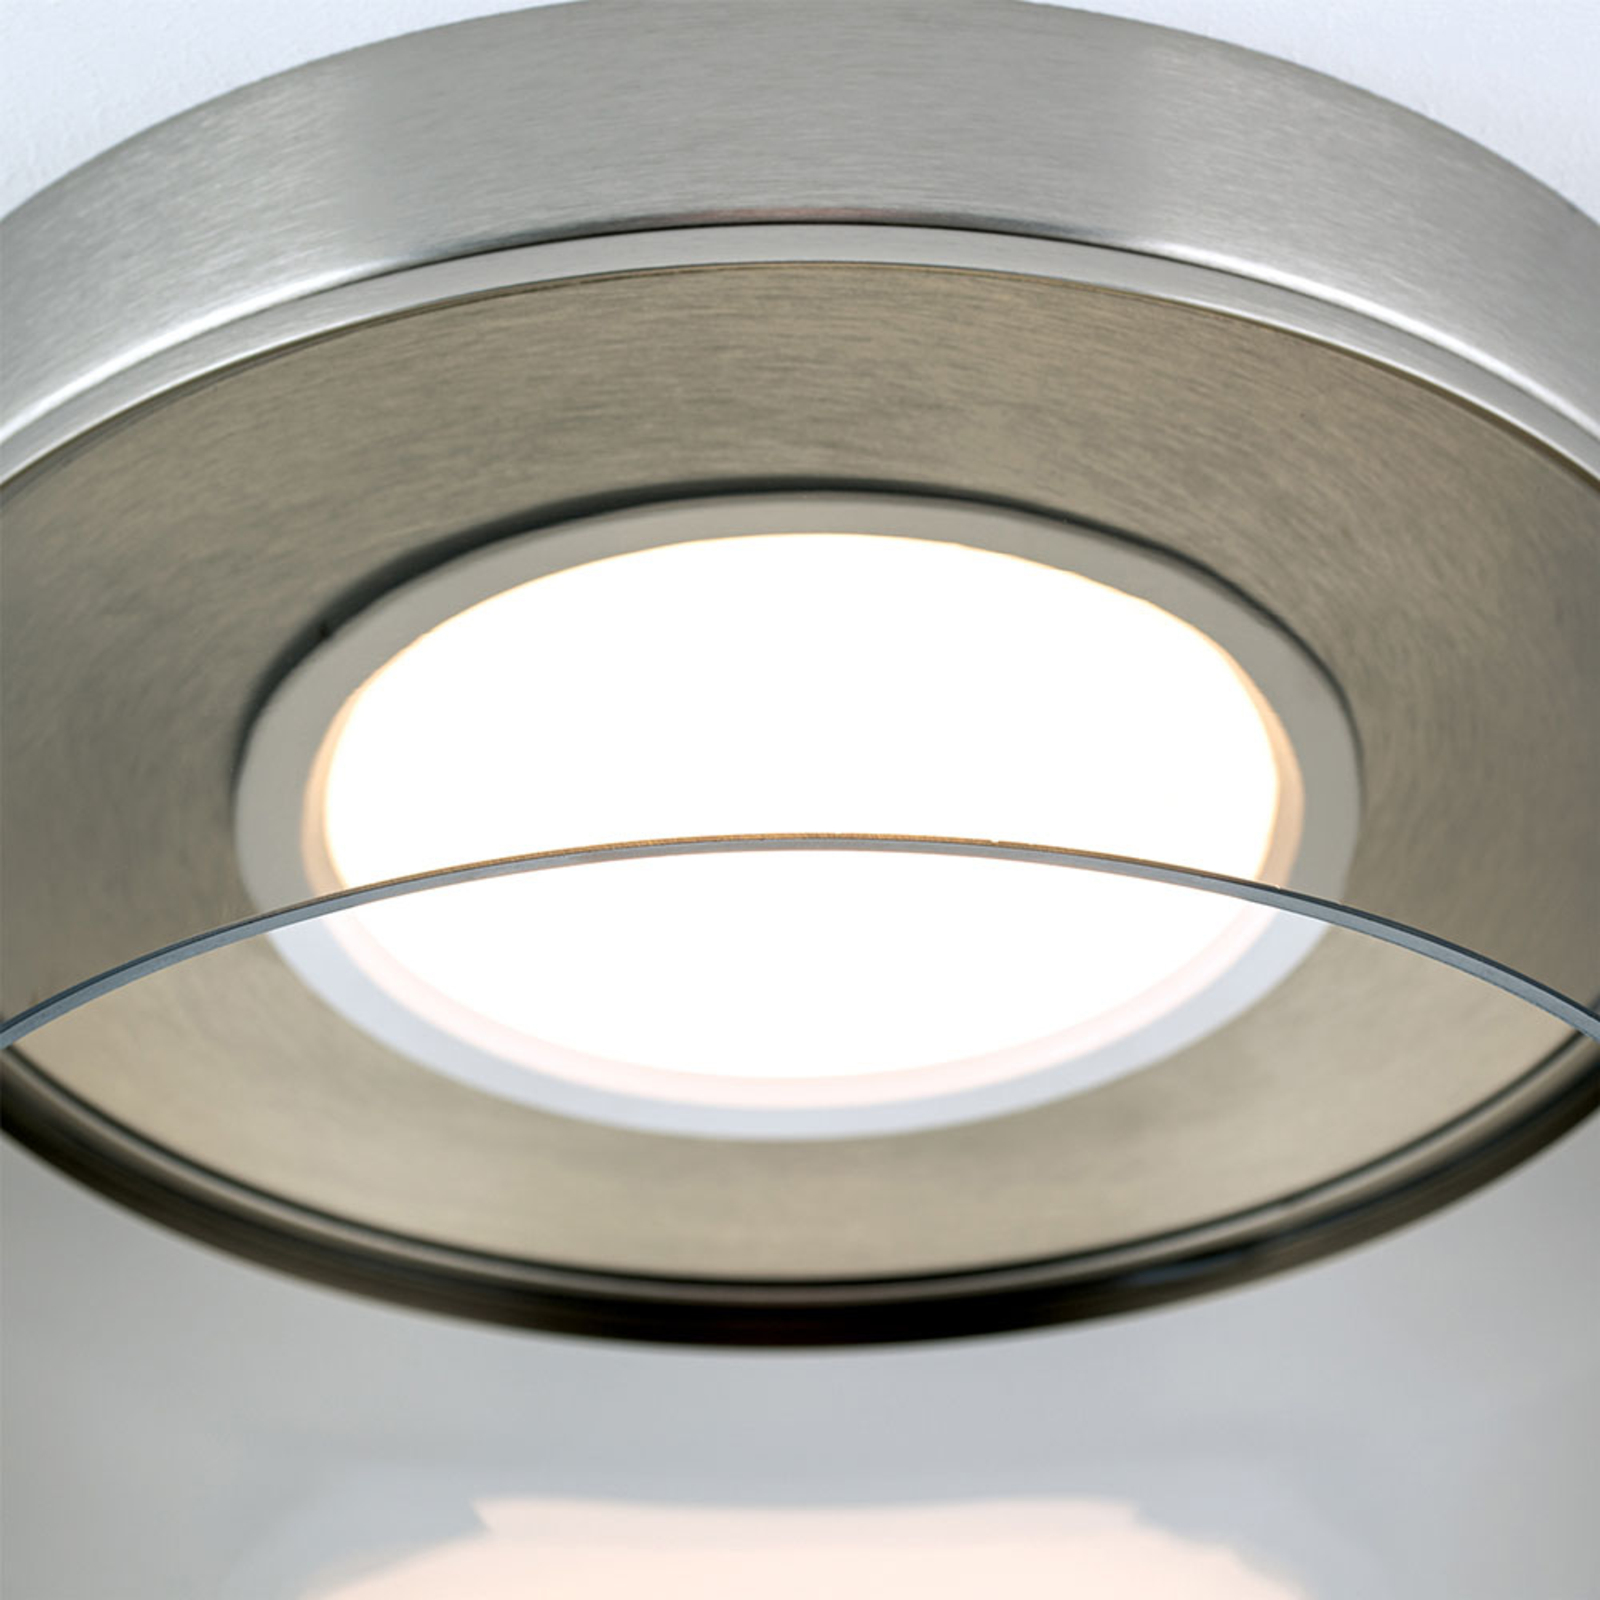 LED plafondlamp Francis nikkel mat Ø 30 cm